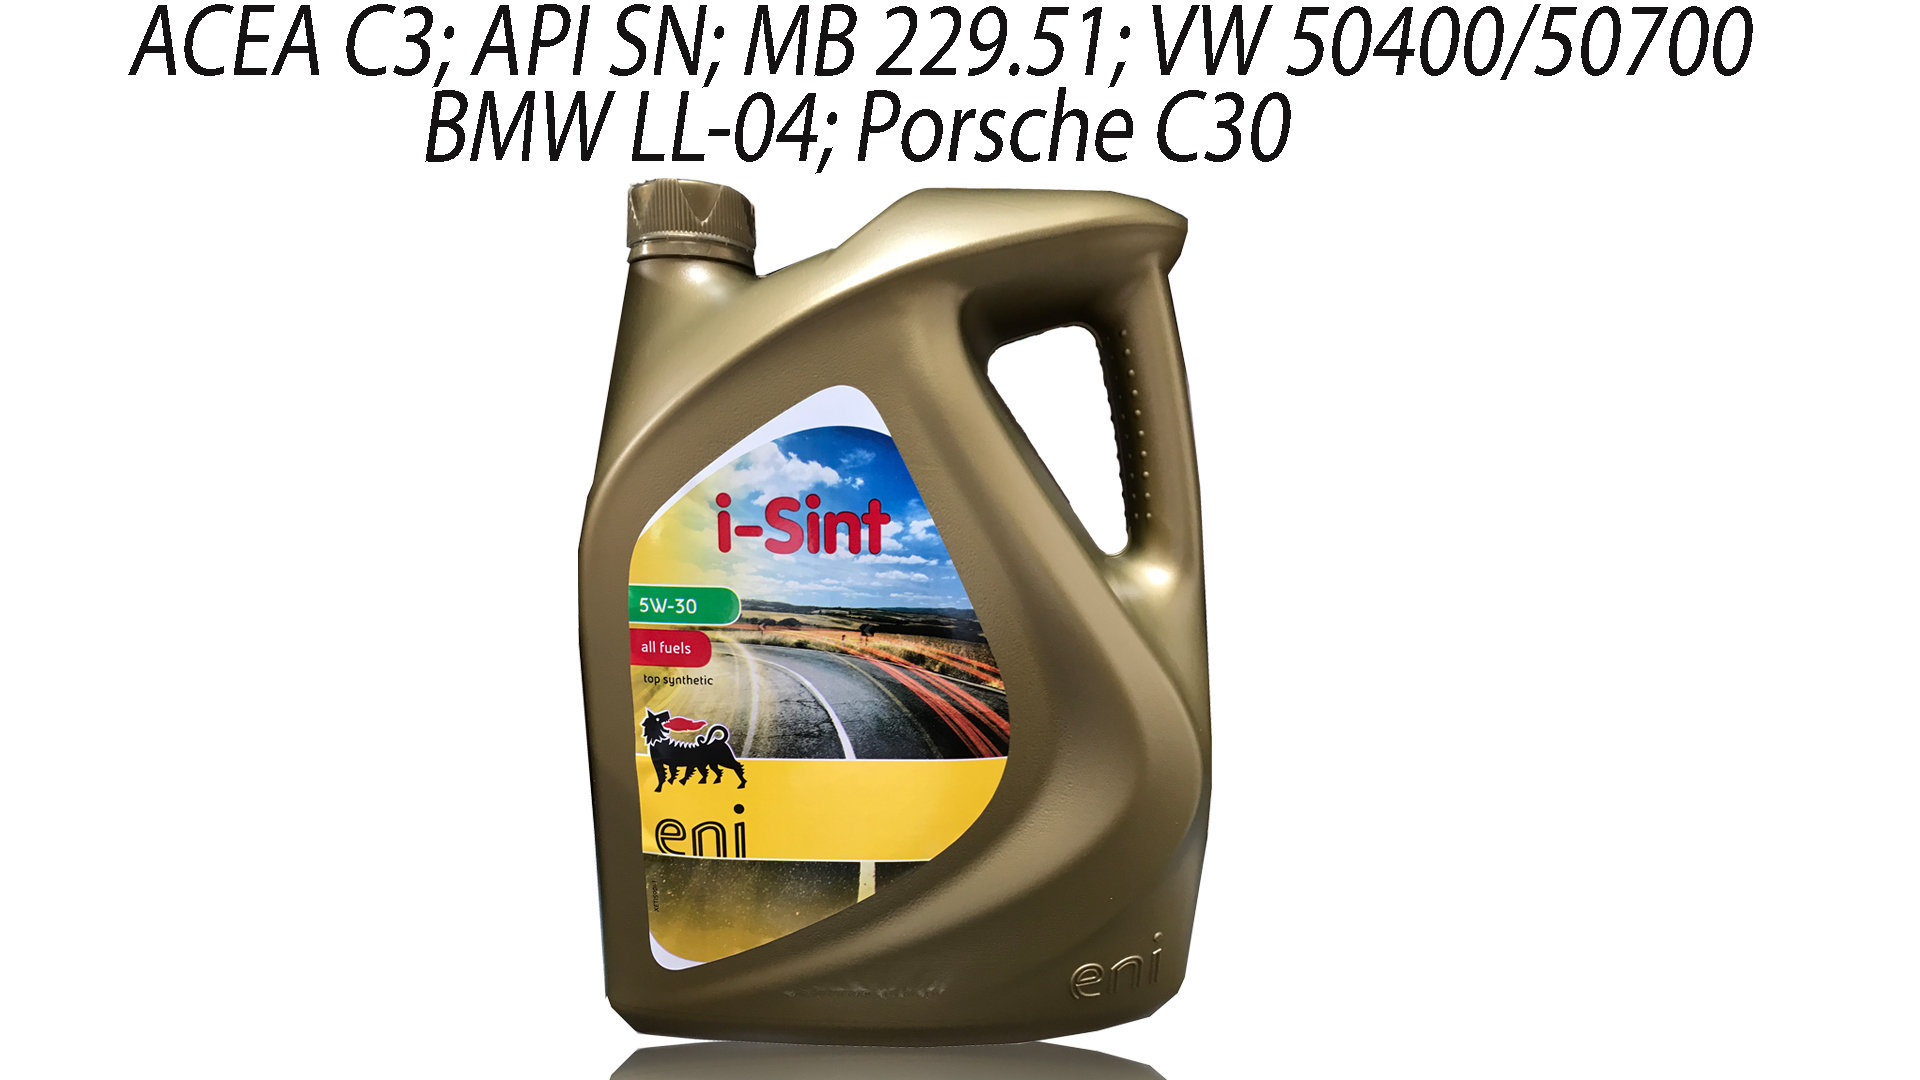 Купить масло 5w30 507. Масло Eni 5w30 артикул. Моторное масло Eni 5w-30. Eni i-Sint 5w-30 504/507. Моторное масло Eni i-Sint 5w30.